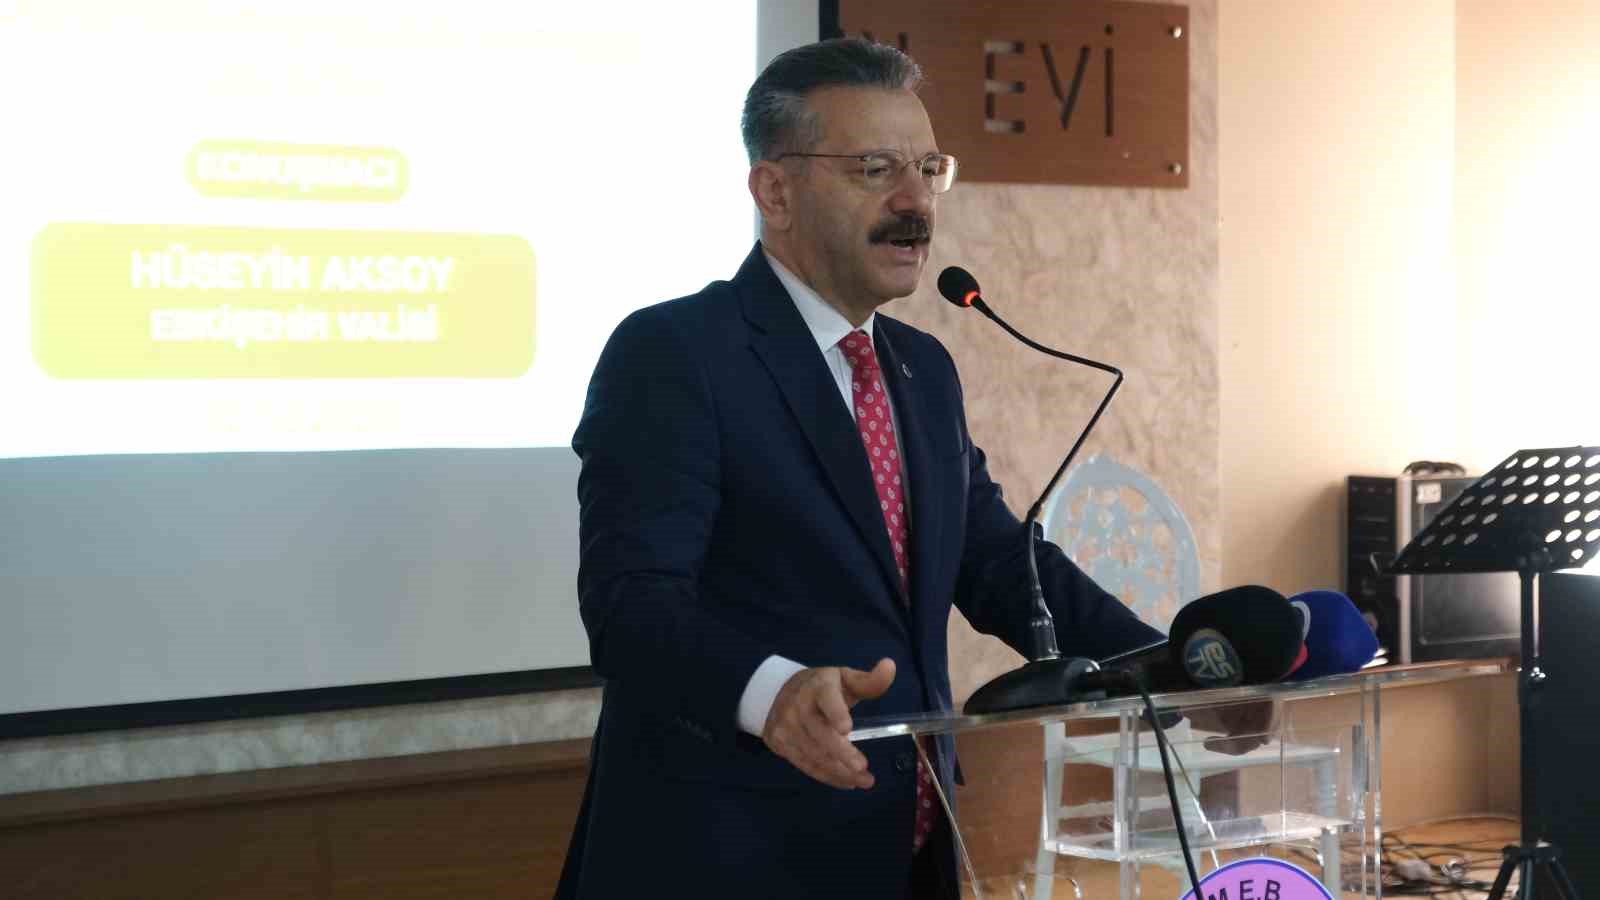 Türkiye Yüzyılı Din Öğretiminin Niteliğini Arttırma Çalıştayı gerçekleştirildi